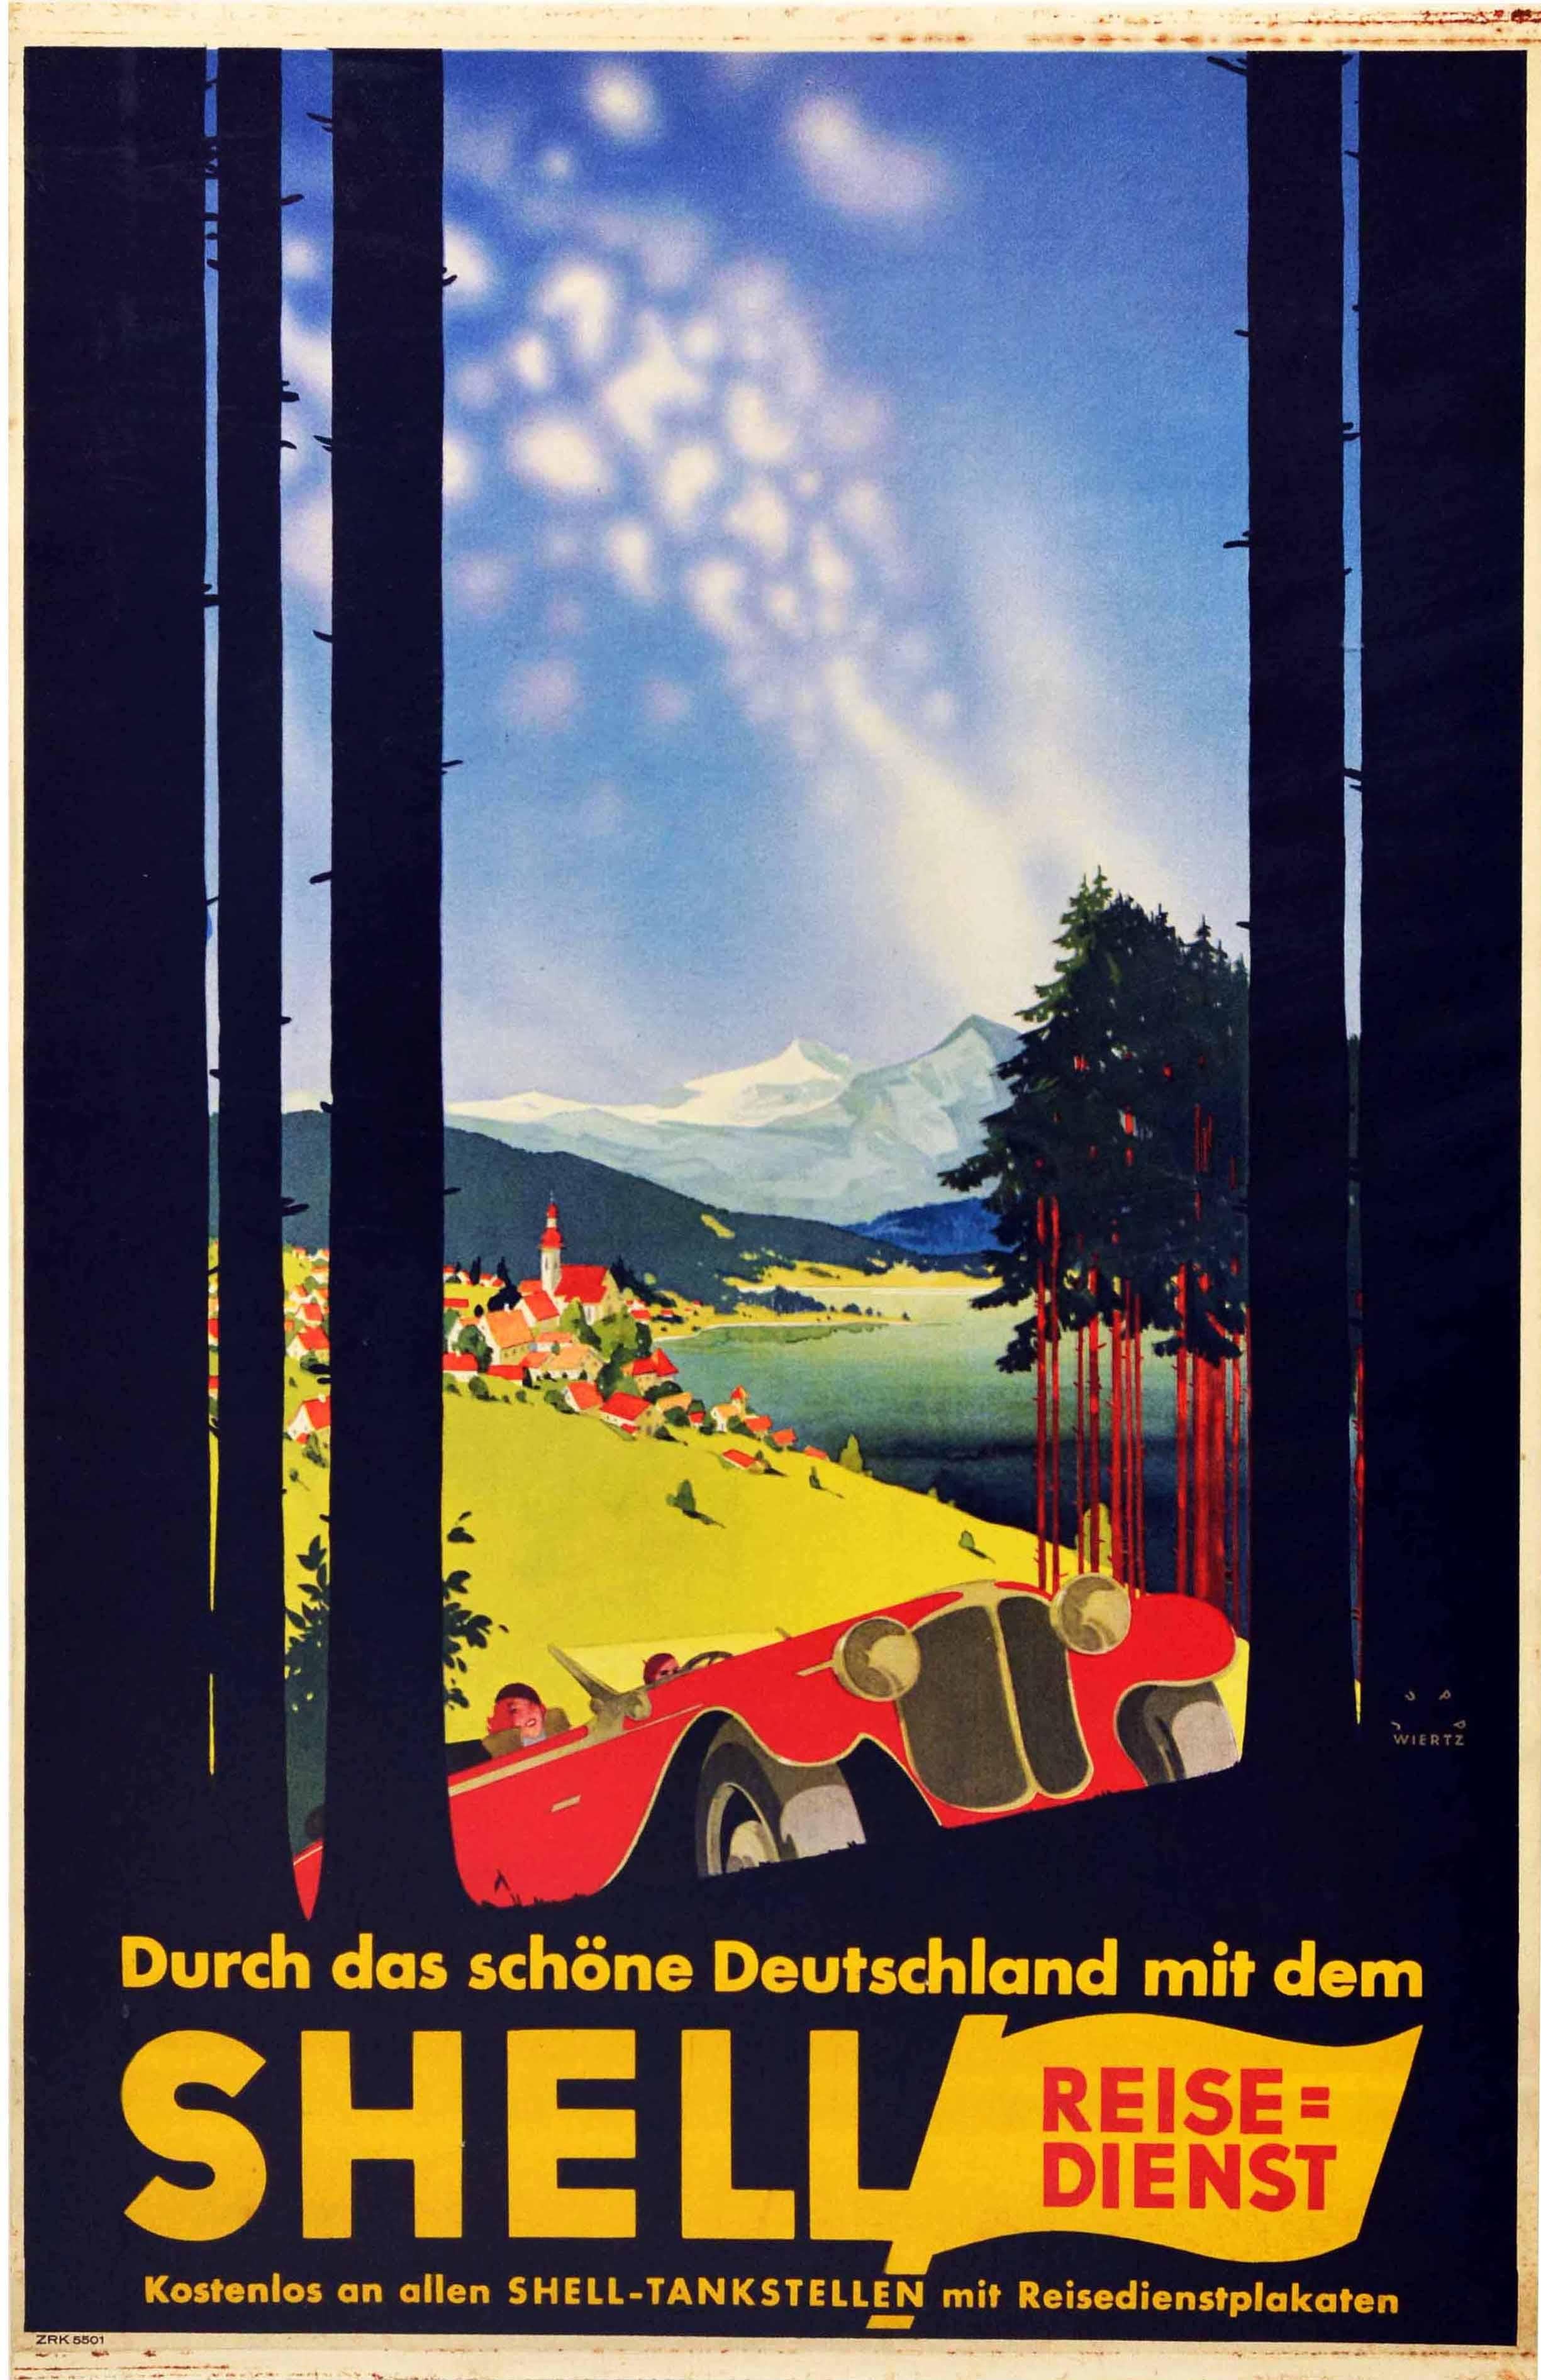 Affiche publicitaire originale d'époque pour un voyage Shell en Allemagne, avec un dessin Art déco du célèbre graphiste Jupp Wiertz (Joseph Lambert Wiertz ; 1888-1939) représentant une vue panoramique de la campagne à travers des arbres avec une